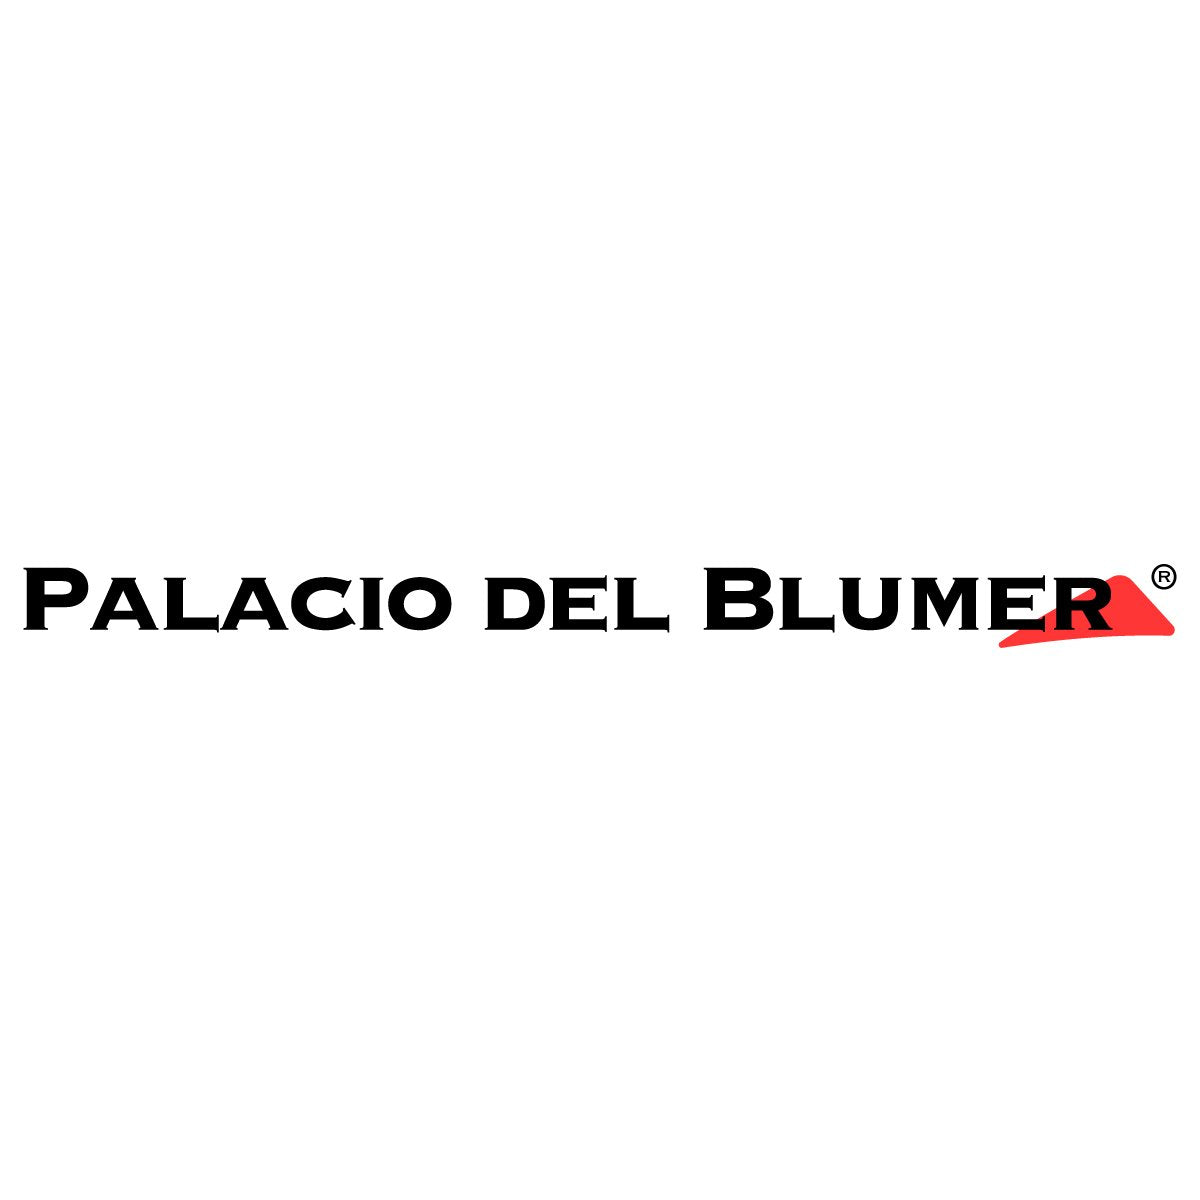 Palacio del Blumer, Ropa interior, Bóxers, Panties